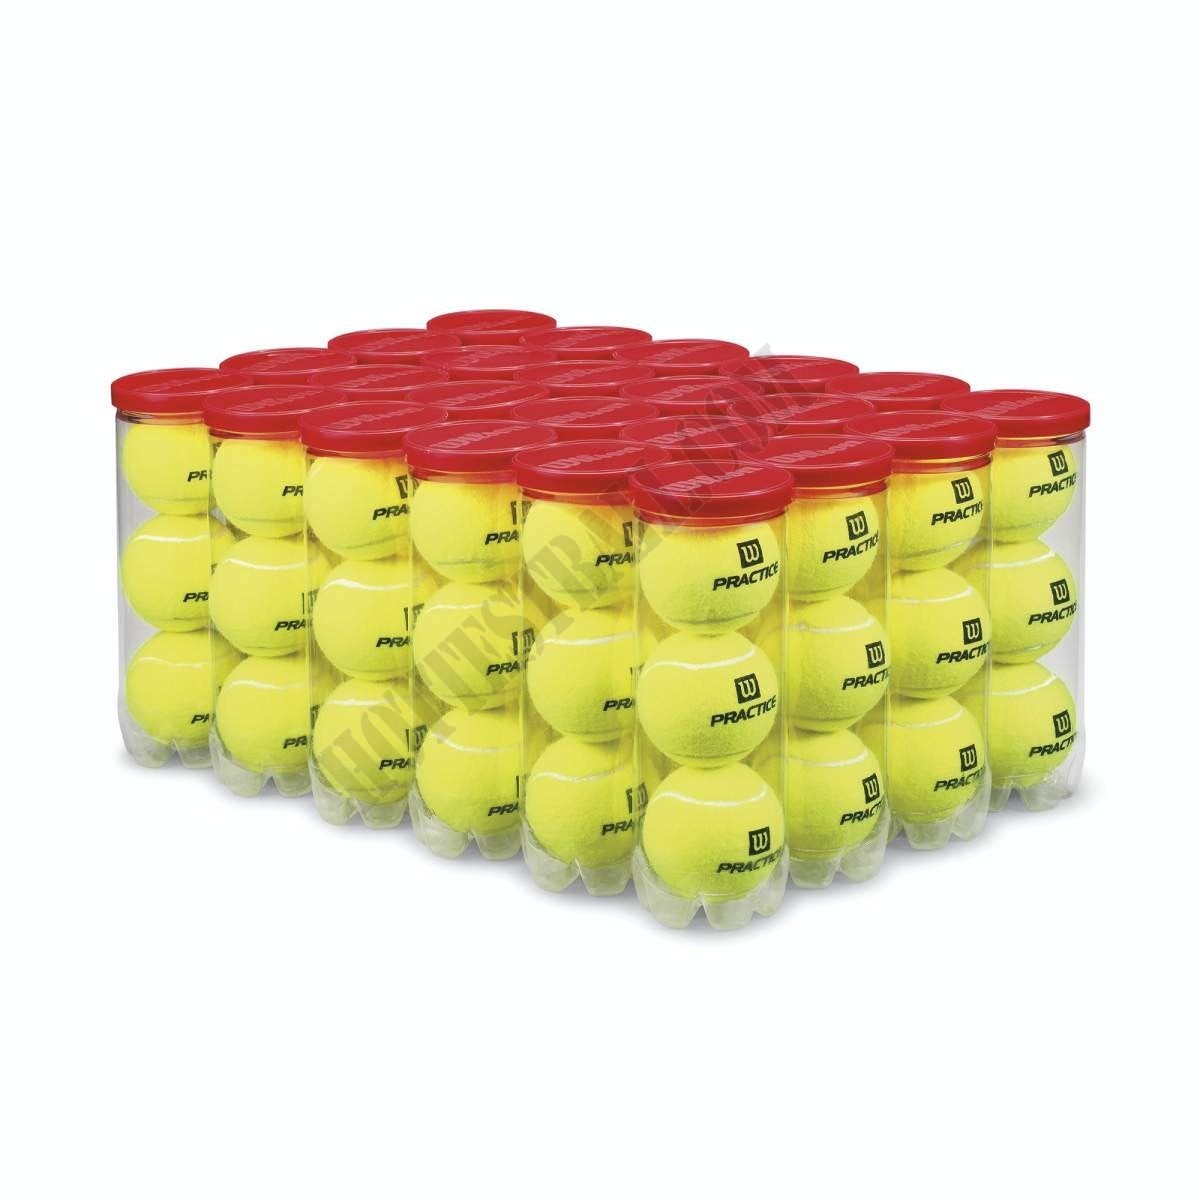 Practice Tennis Balls - Wilson Discount Store - Practice Tennis Balls - Wilson Discount Store